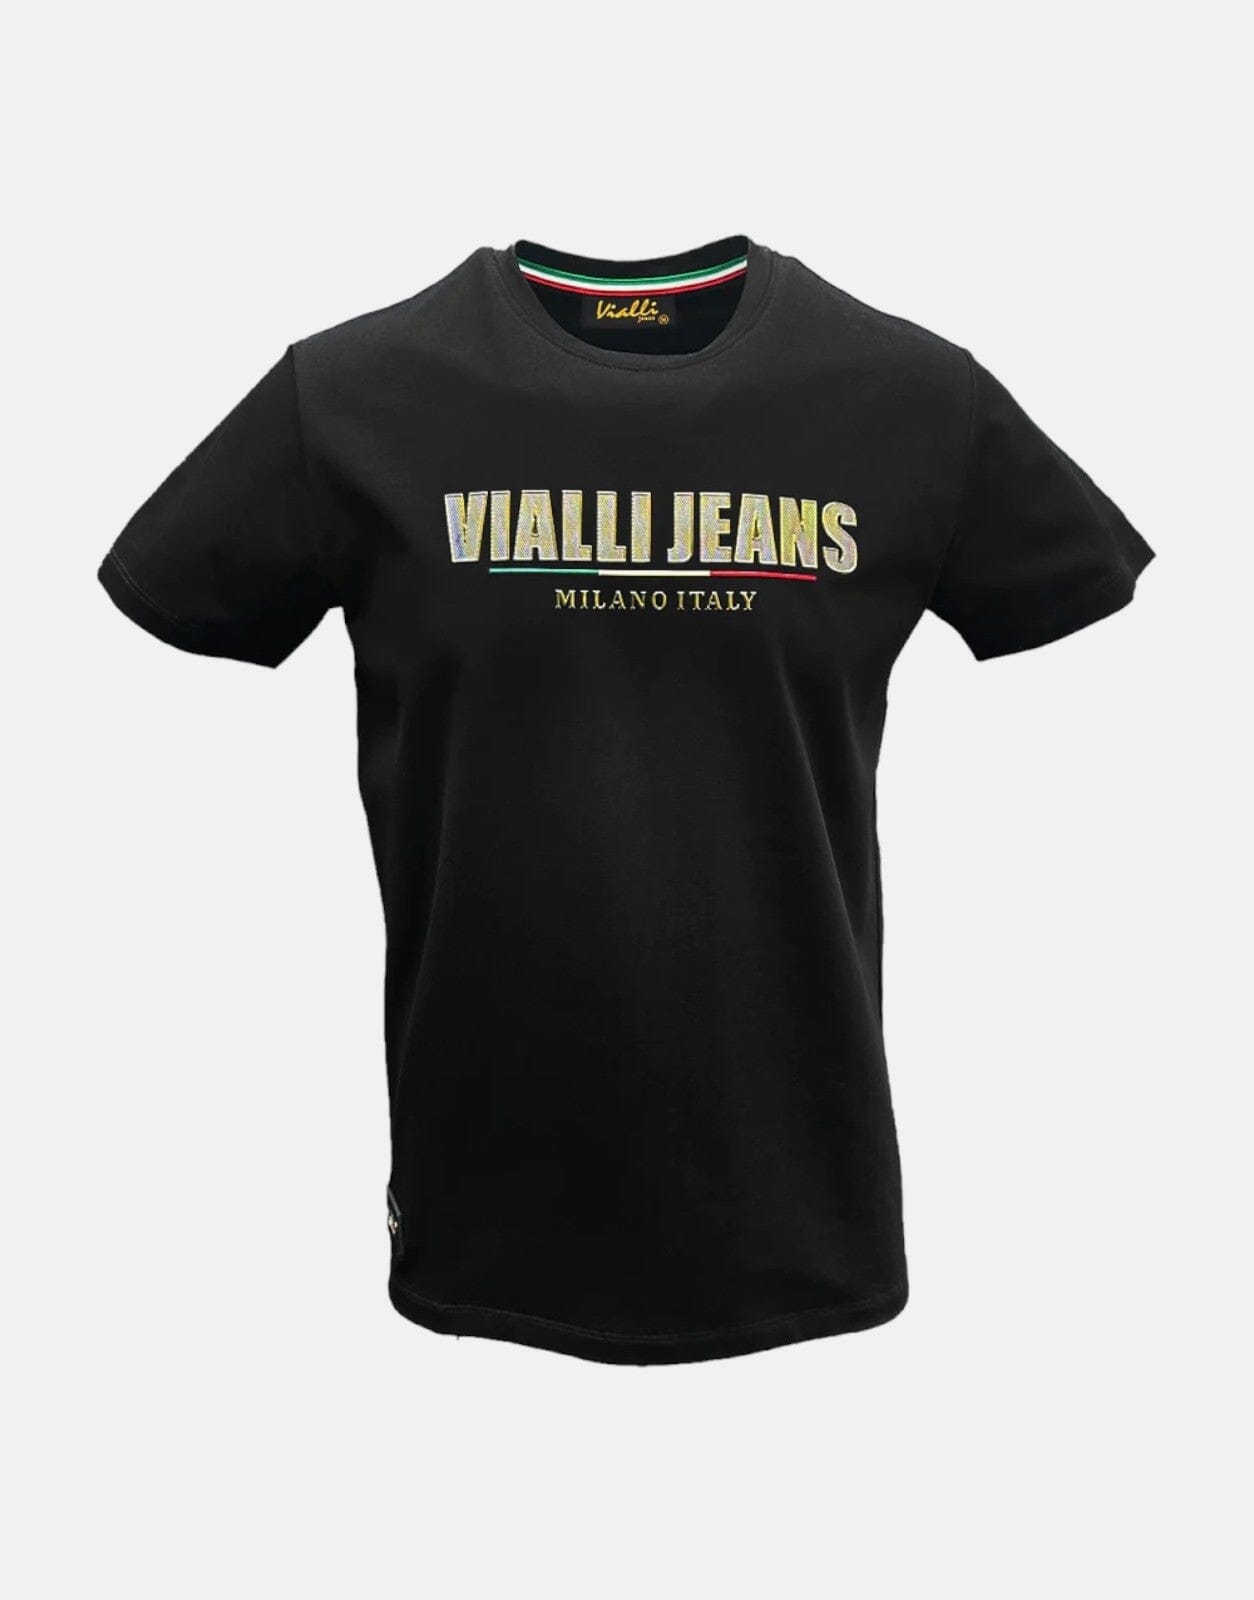 Vialli Fambani Black T-Shirt, L / Black